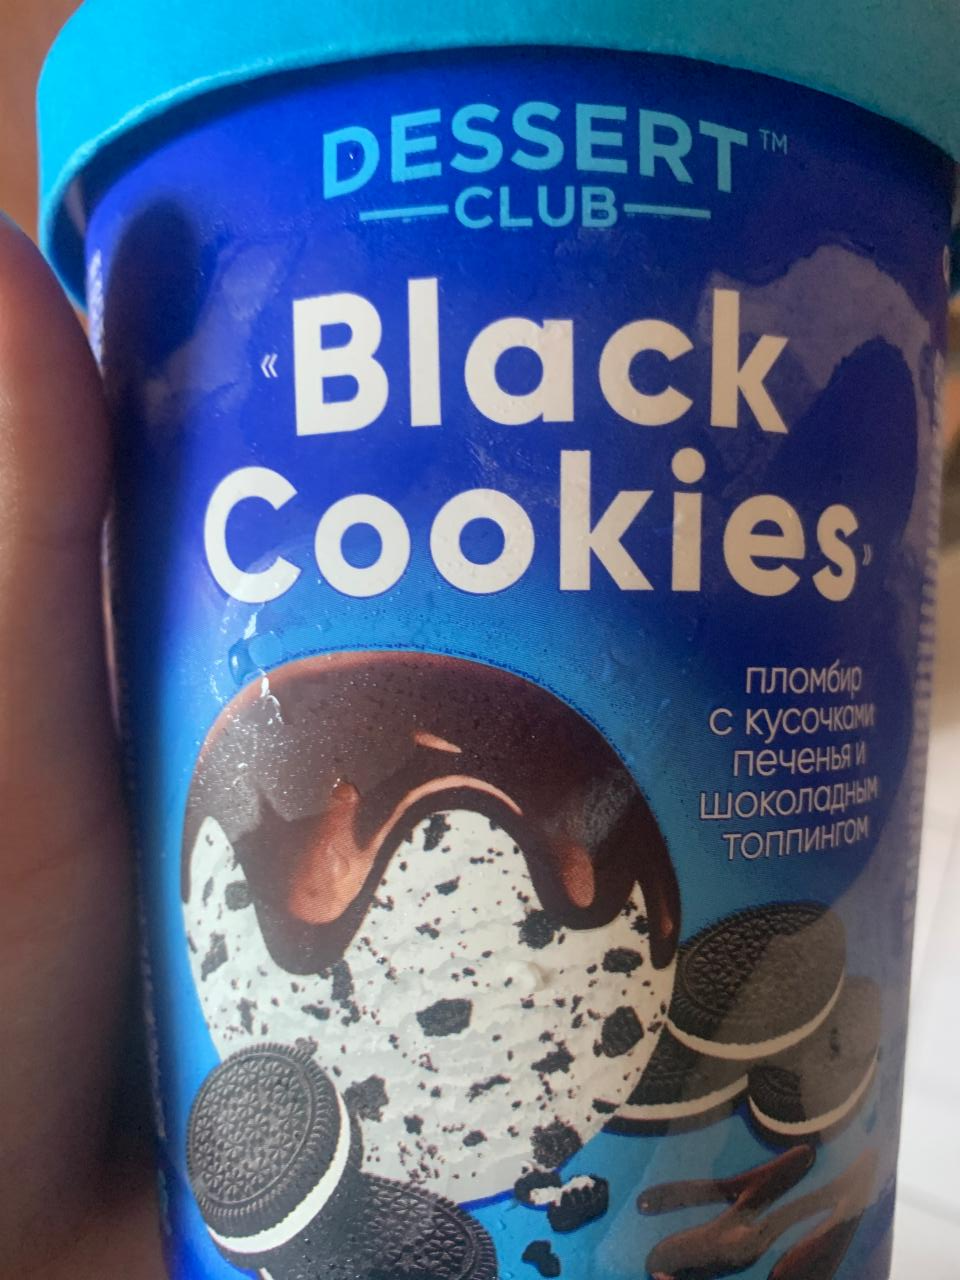 Фото - Black cookies пломбир с кусочками печенья и шоколадным топпингом Dessert club